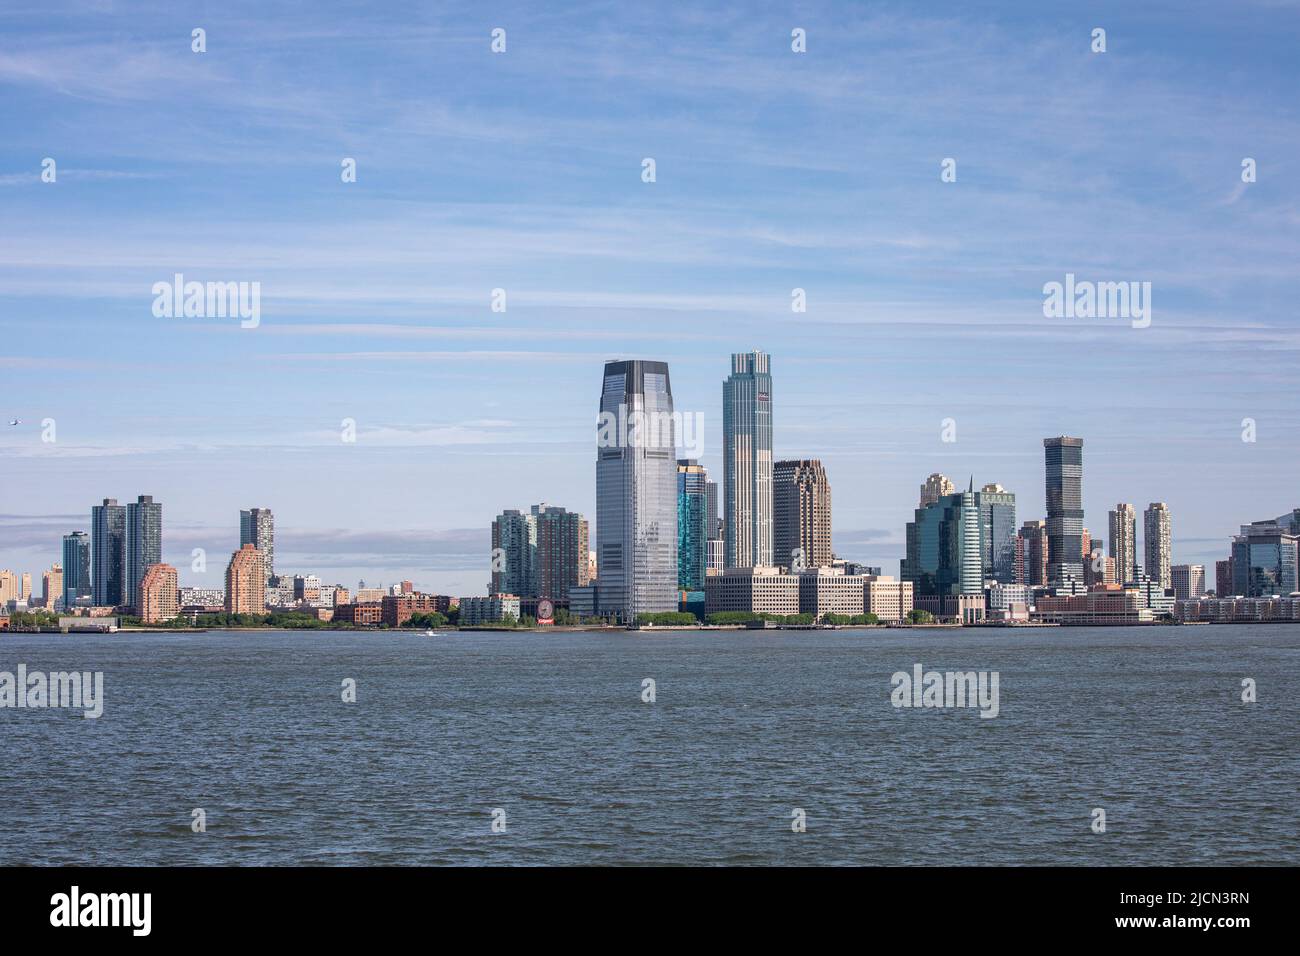 Perfil de la ciudad de Jersey con edificios altos en Jersey City, New Jersey, Estados Unidos de América Foto de stock